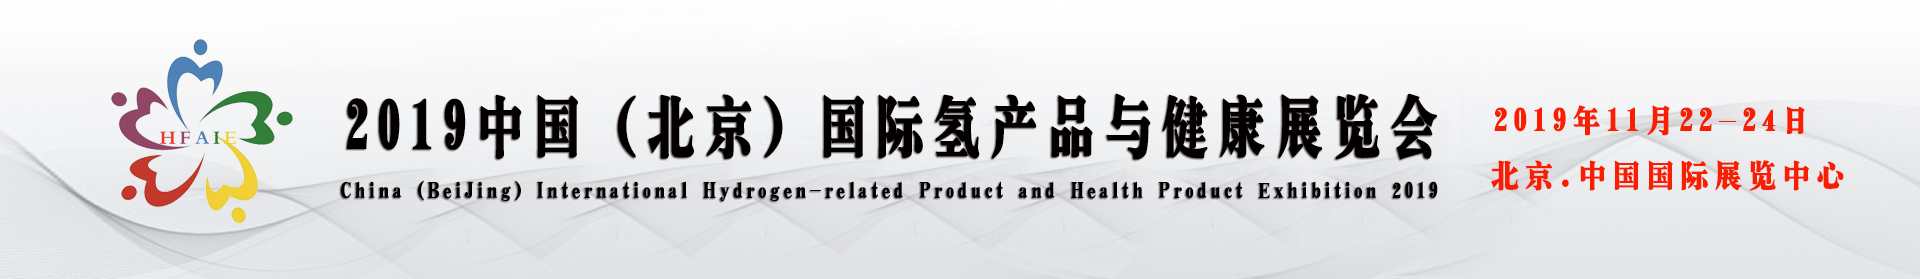 2019中国北京国际氢产品展览会